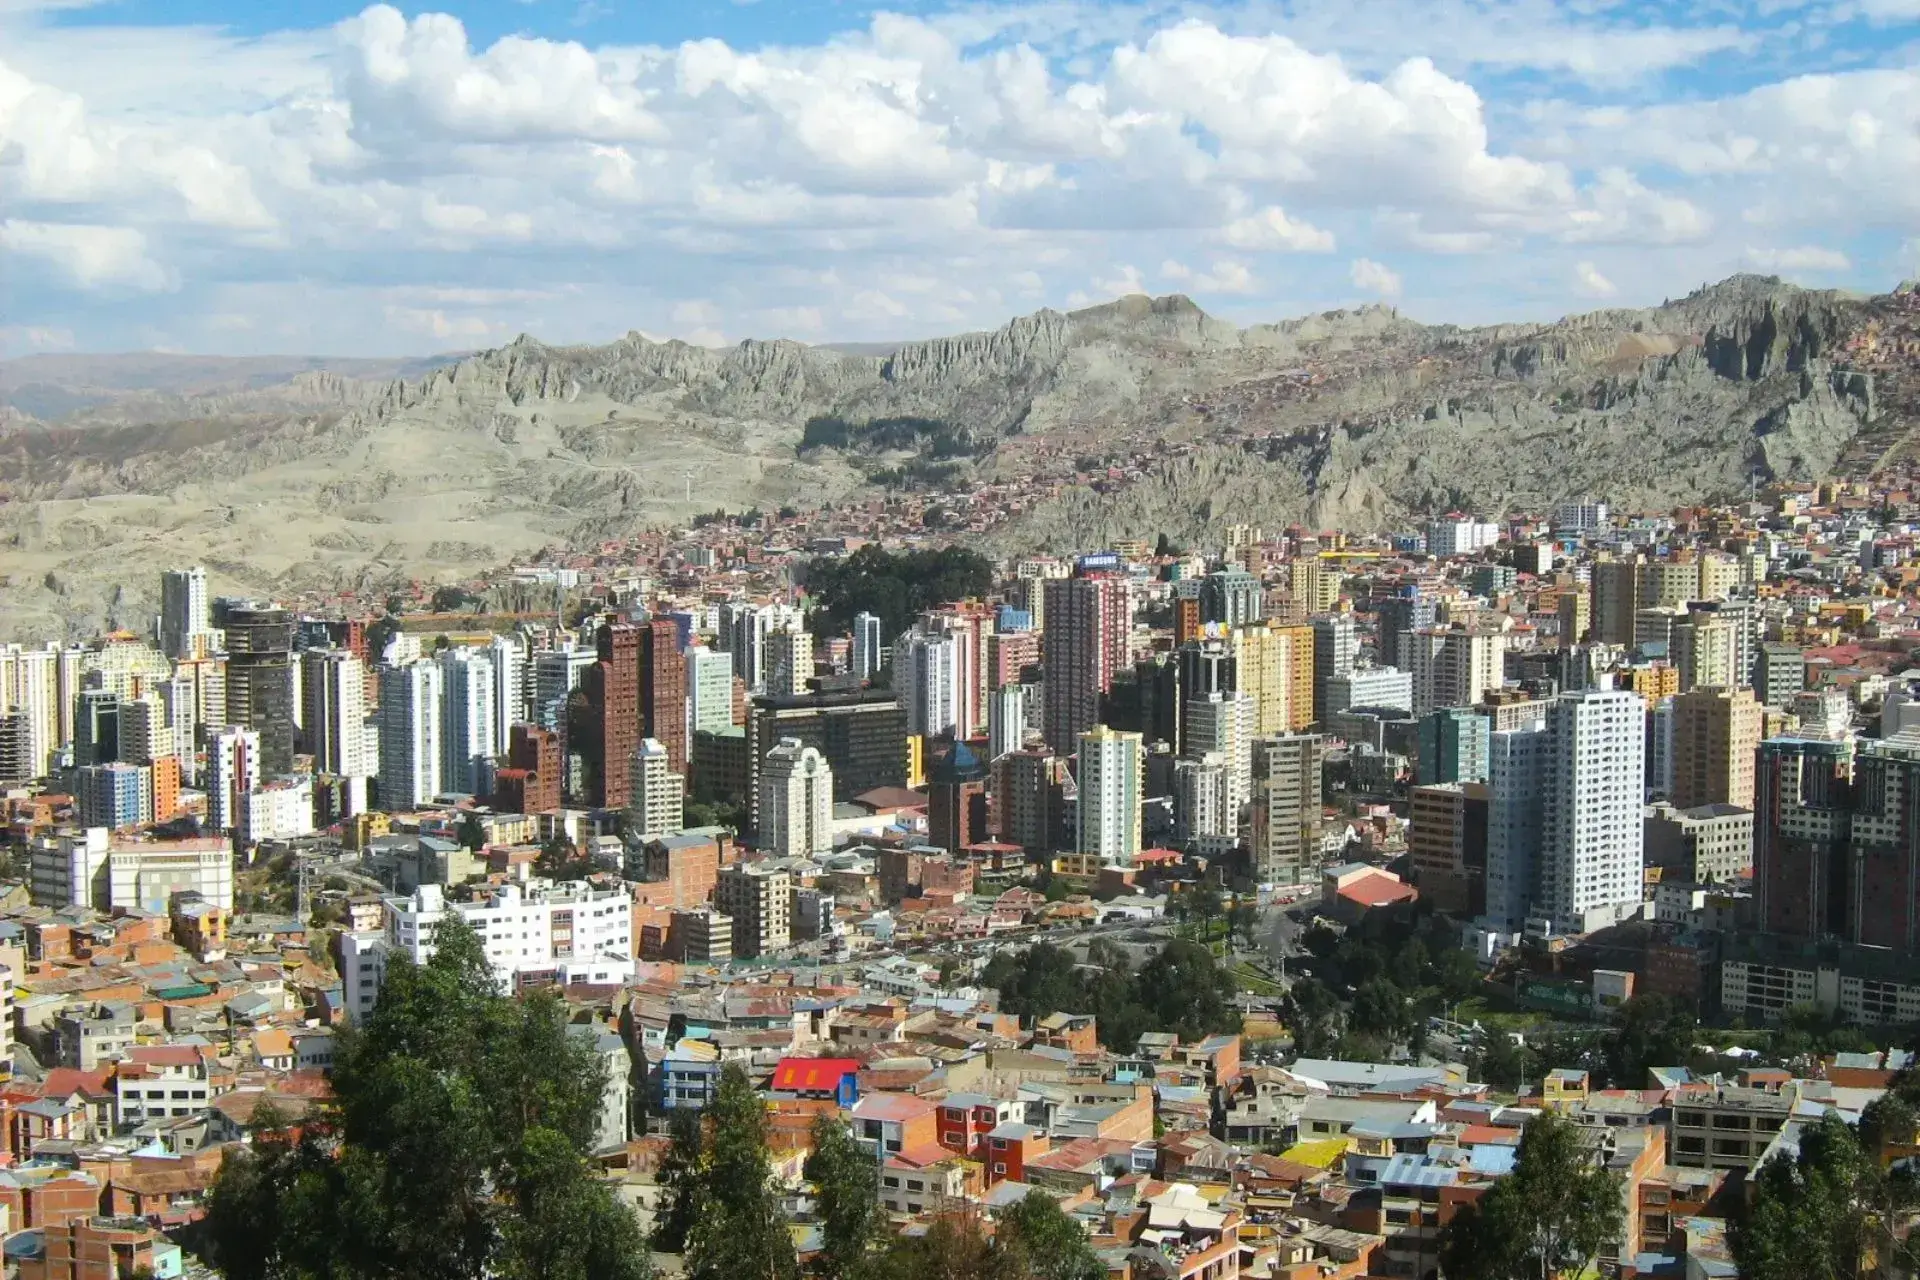 Edificios altos, casas bajas y montañas de fondo de esta panorámica de la ciudad de La Paz